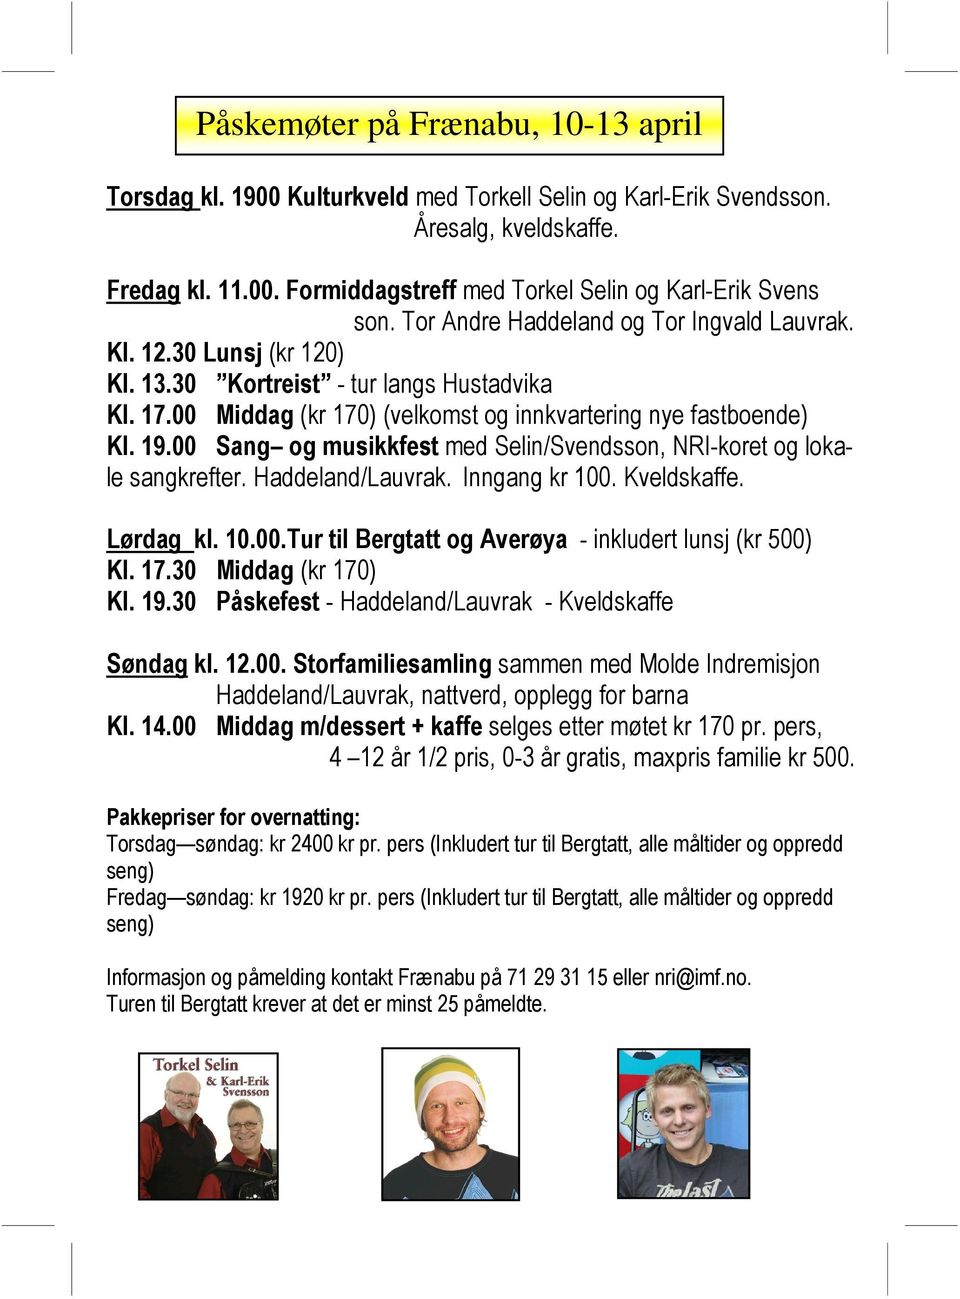 00 Sang og musikkfest med Selin/Svendsson, NRI-koret og lokale sangkrefter. Haddeland/Lauvrak. Inngang kr 100. Kveldskaffe. Lørdag kl. 10.00.Tur til Bergtatt og Averøya - inkludert lunsj (kr 500) Kl.